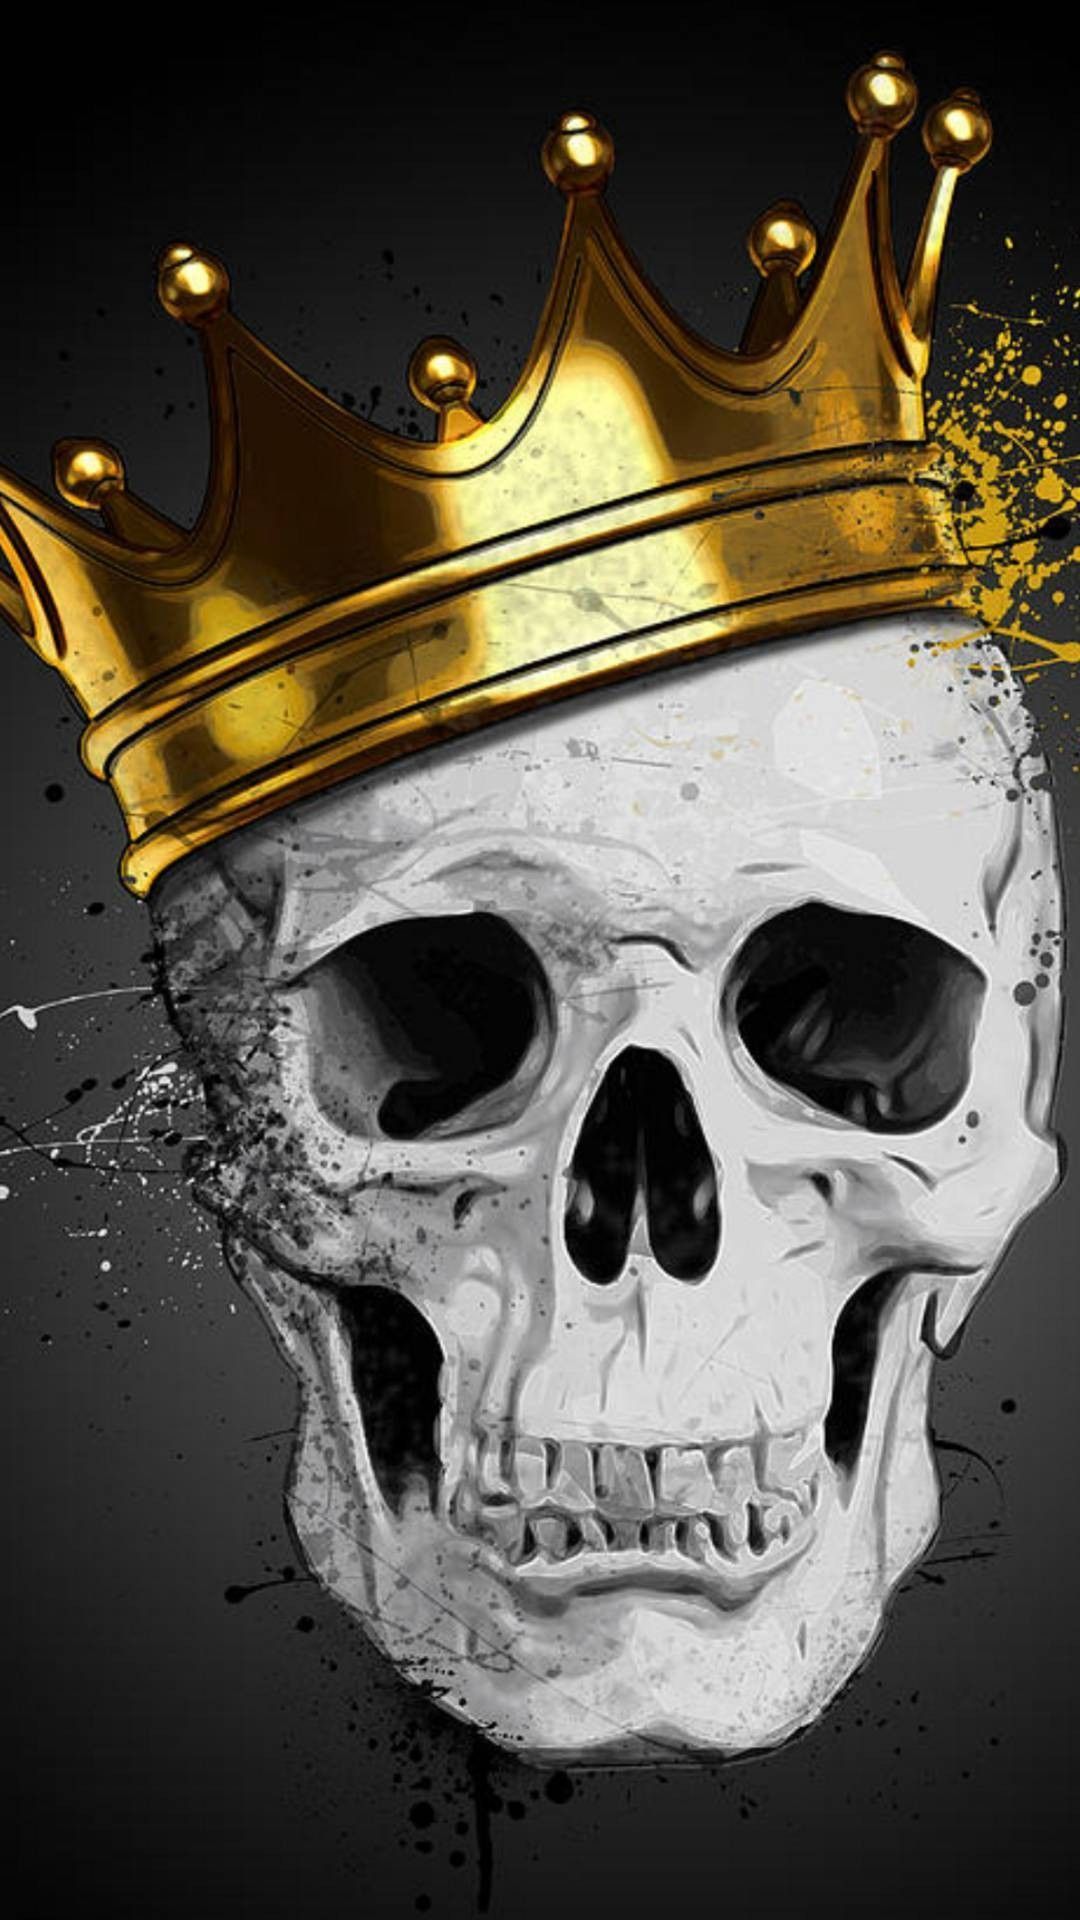 Skull King Wallpaper Free Skull King Background